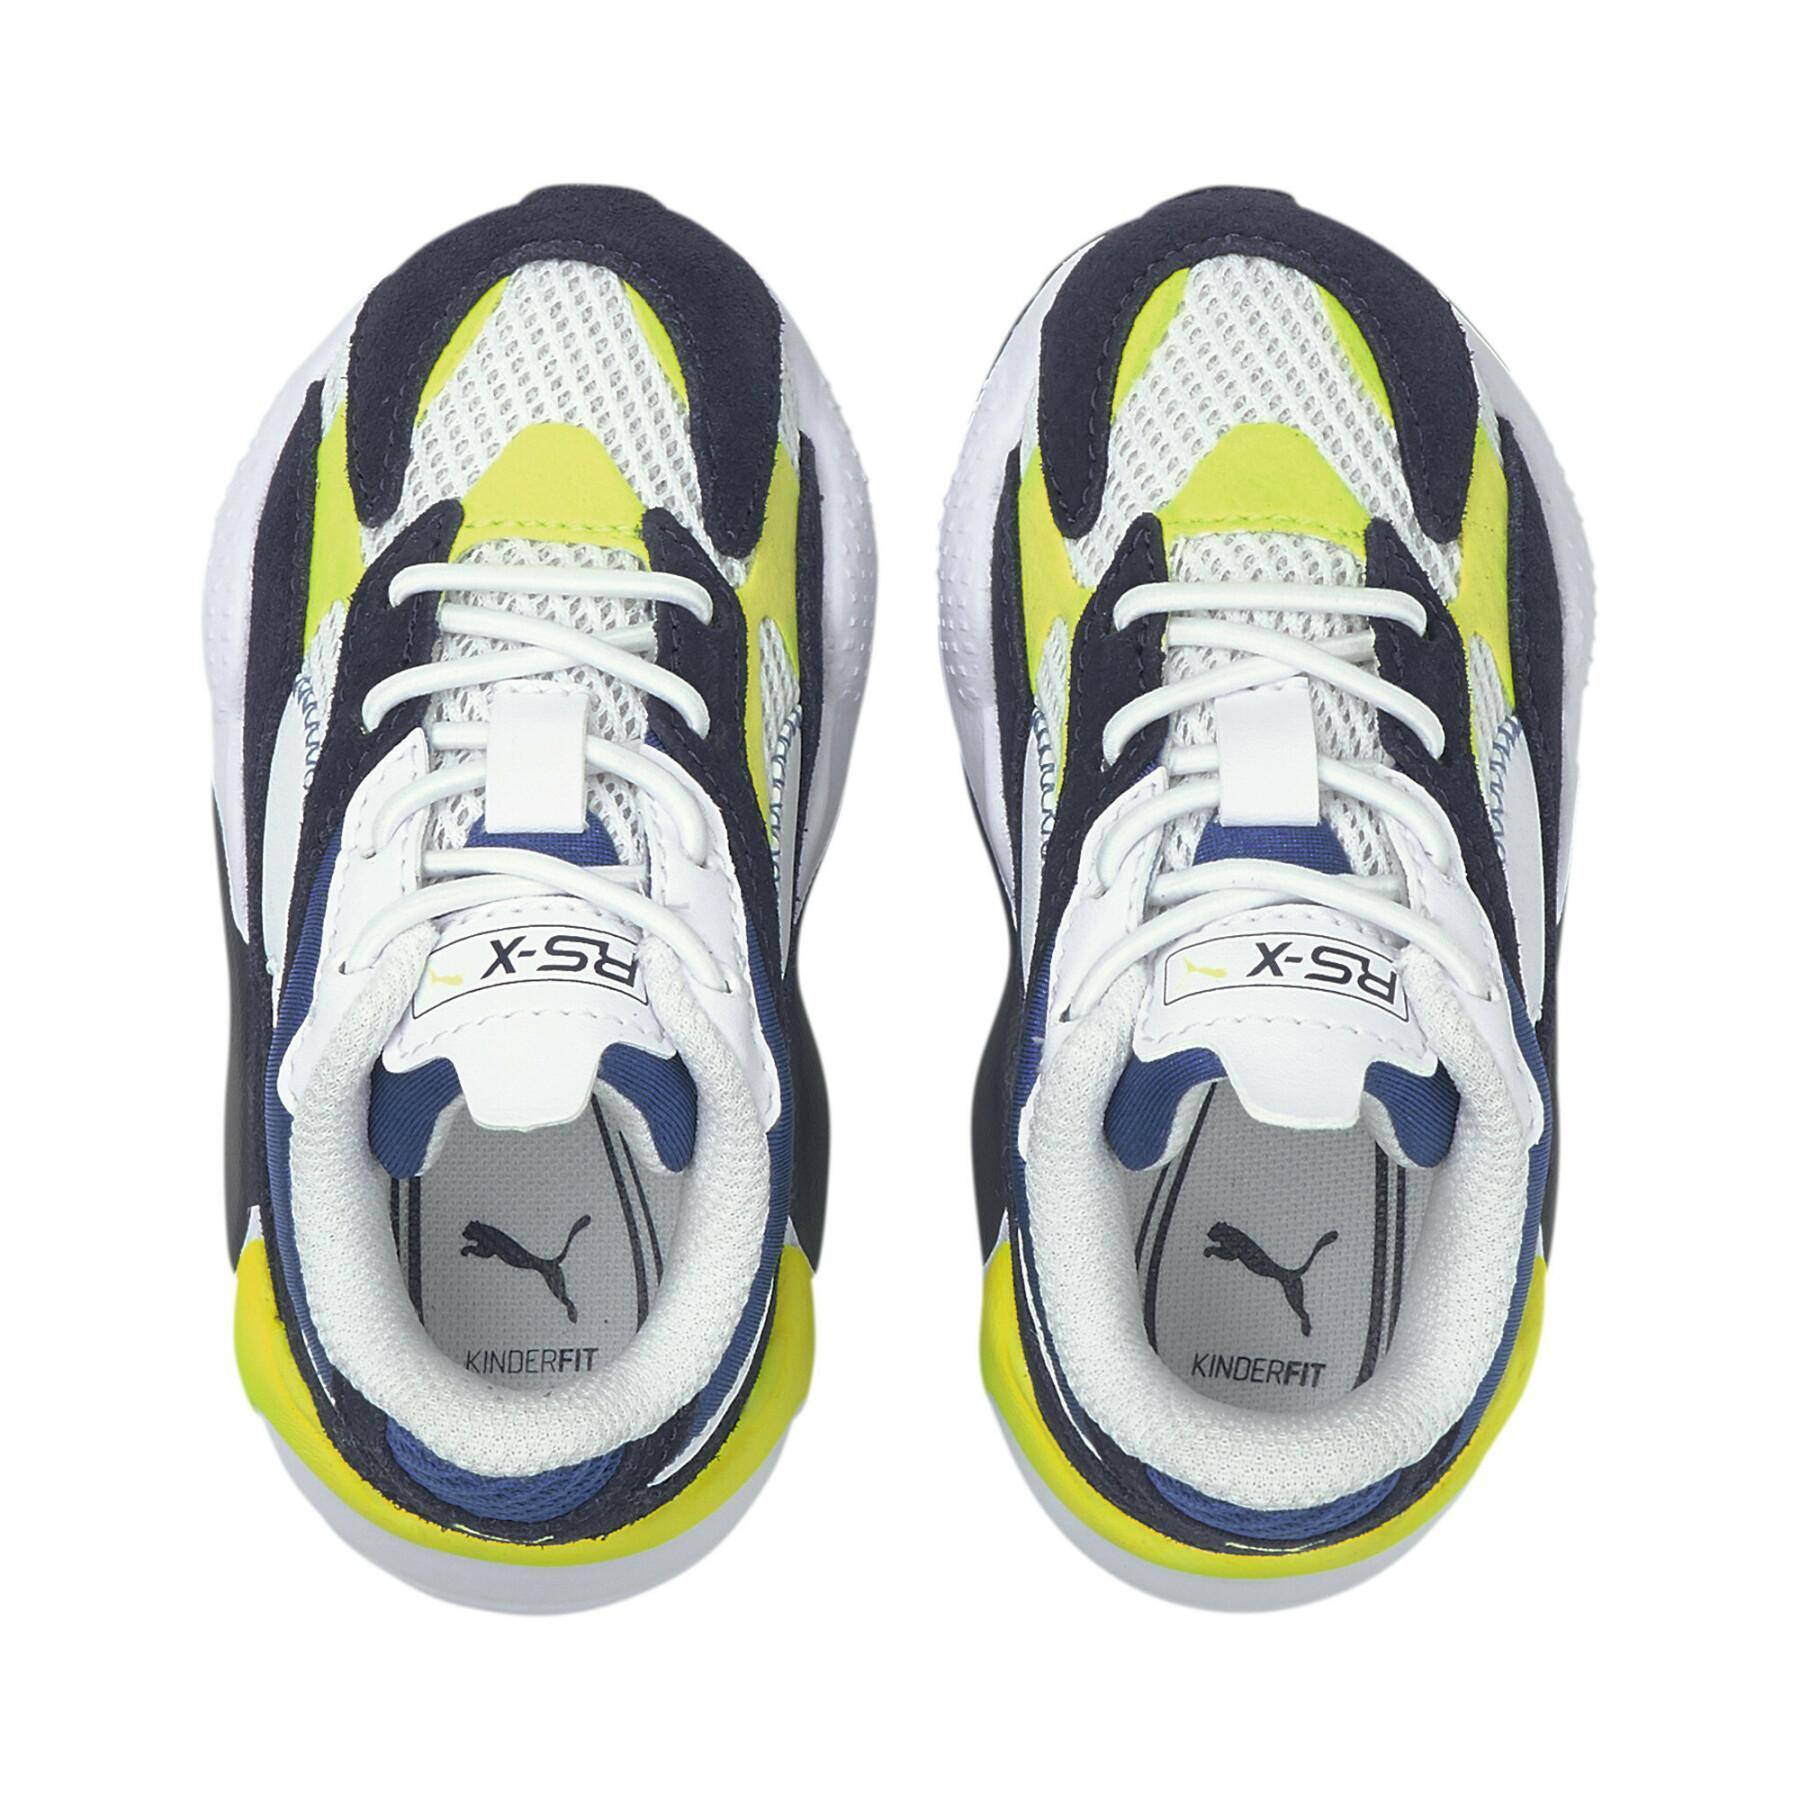 Zapatillas de deporte para niños Puma RS-X³ Twill AirMesh AC